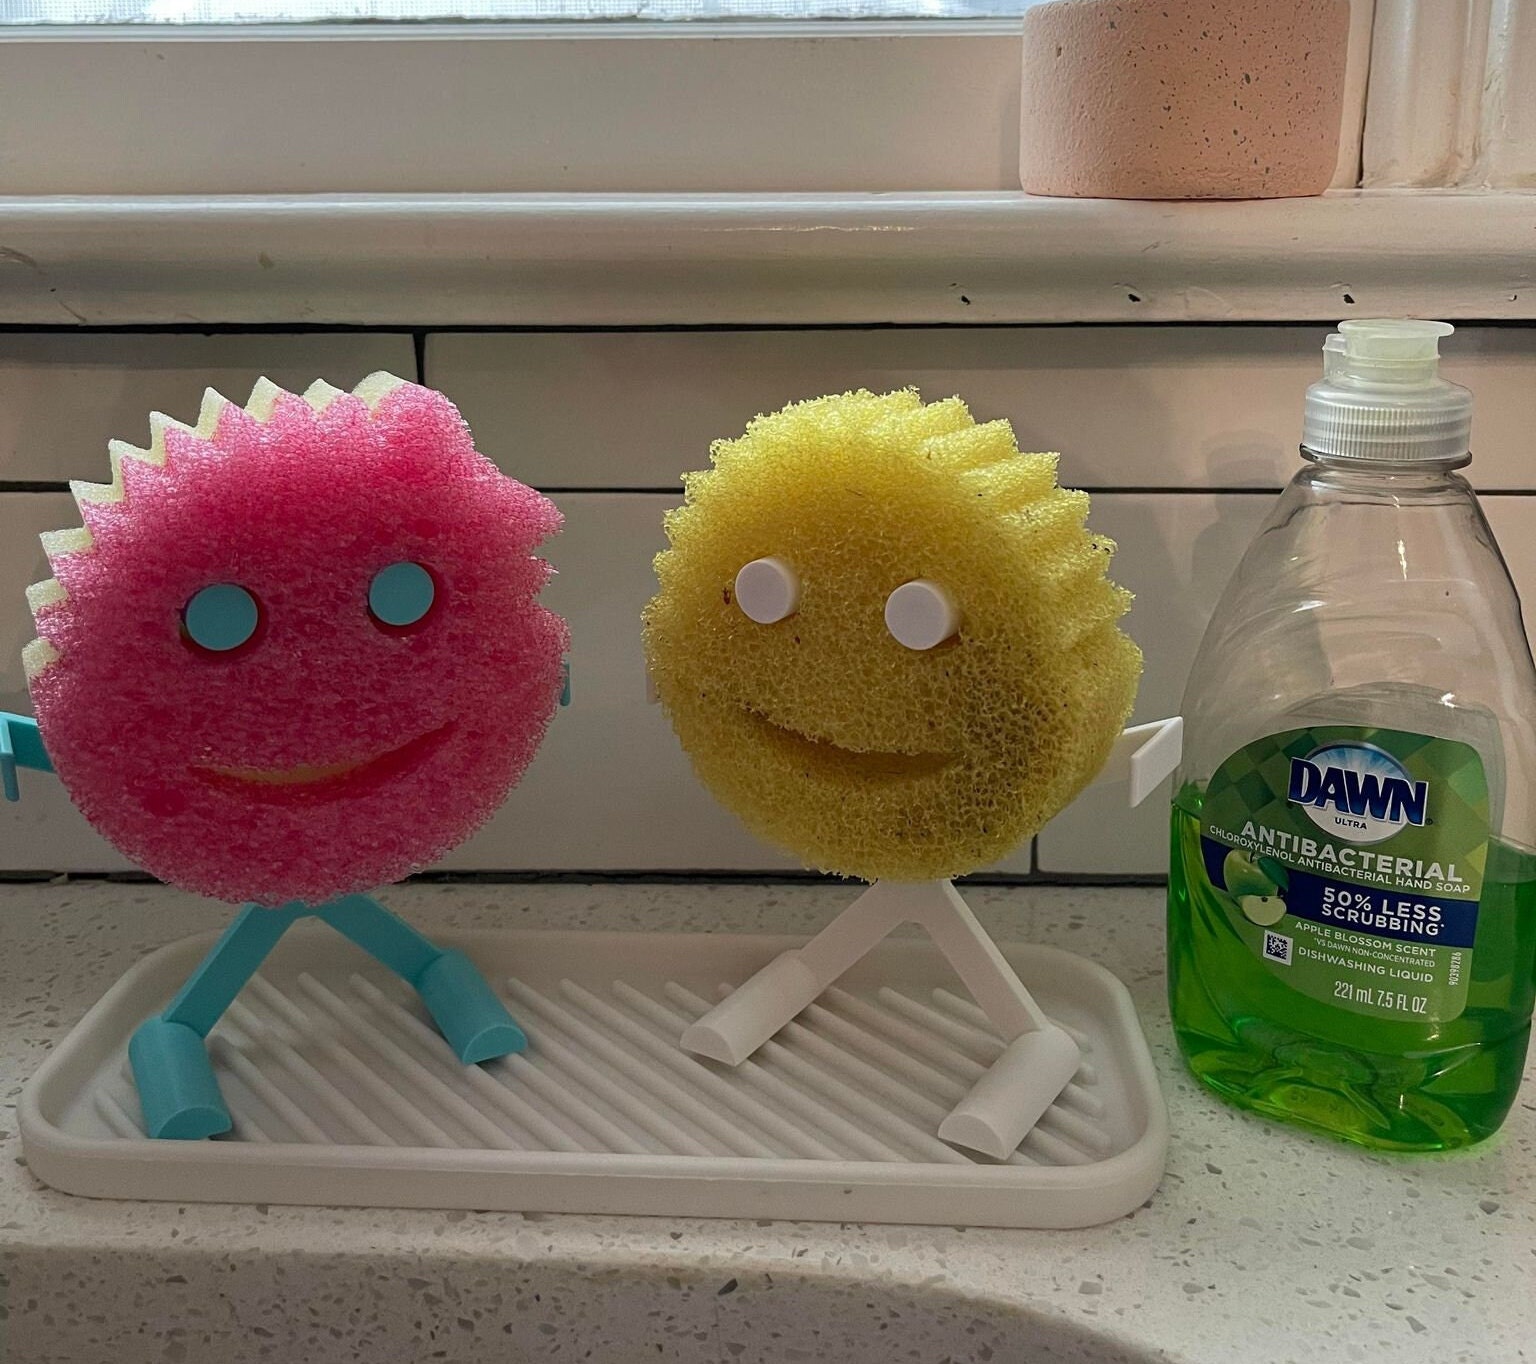 Scrub Daddy / Scrub Mommy Holder customizable Colors 